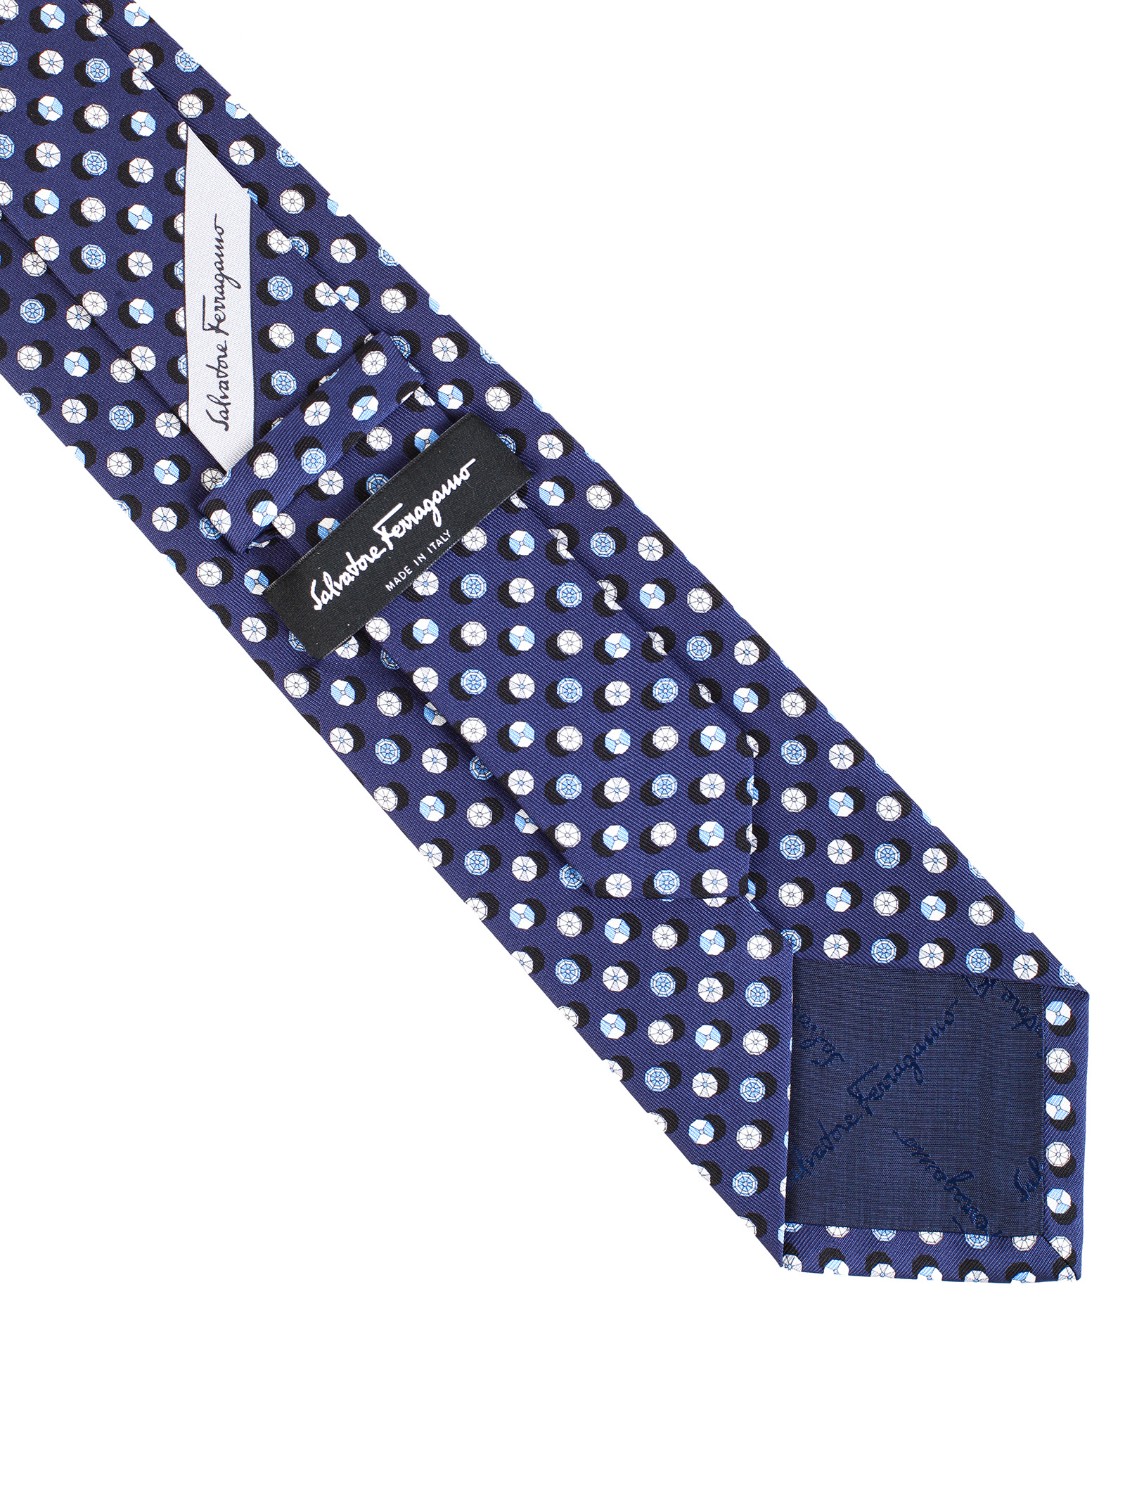 shop SALVATORE FERRAGAMO  Cravatta: Salvatore Ferragamo cravatta in seta con stampa " California Dream".
Composizione: 100% seta.
Made in Italy.. 357872 GIOIOSO-001 703040 number 2838124